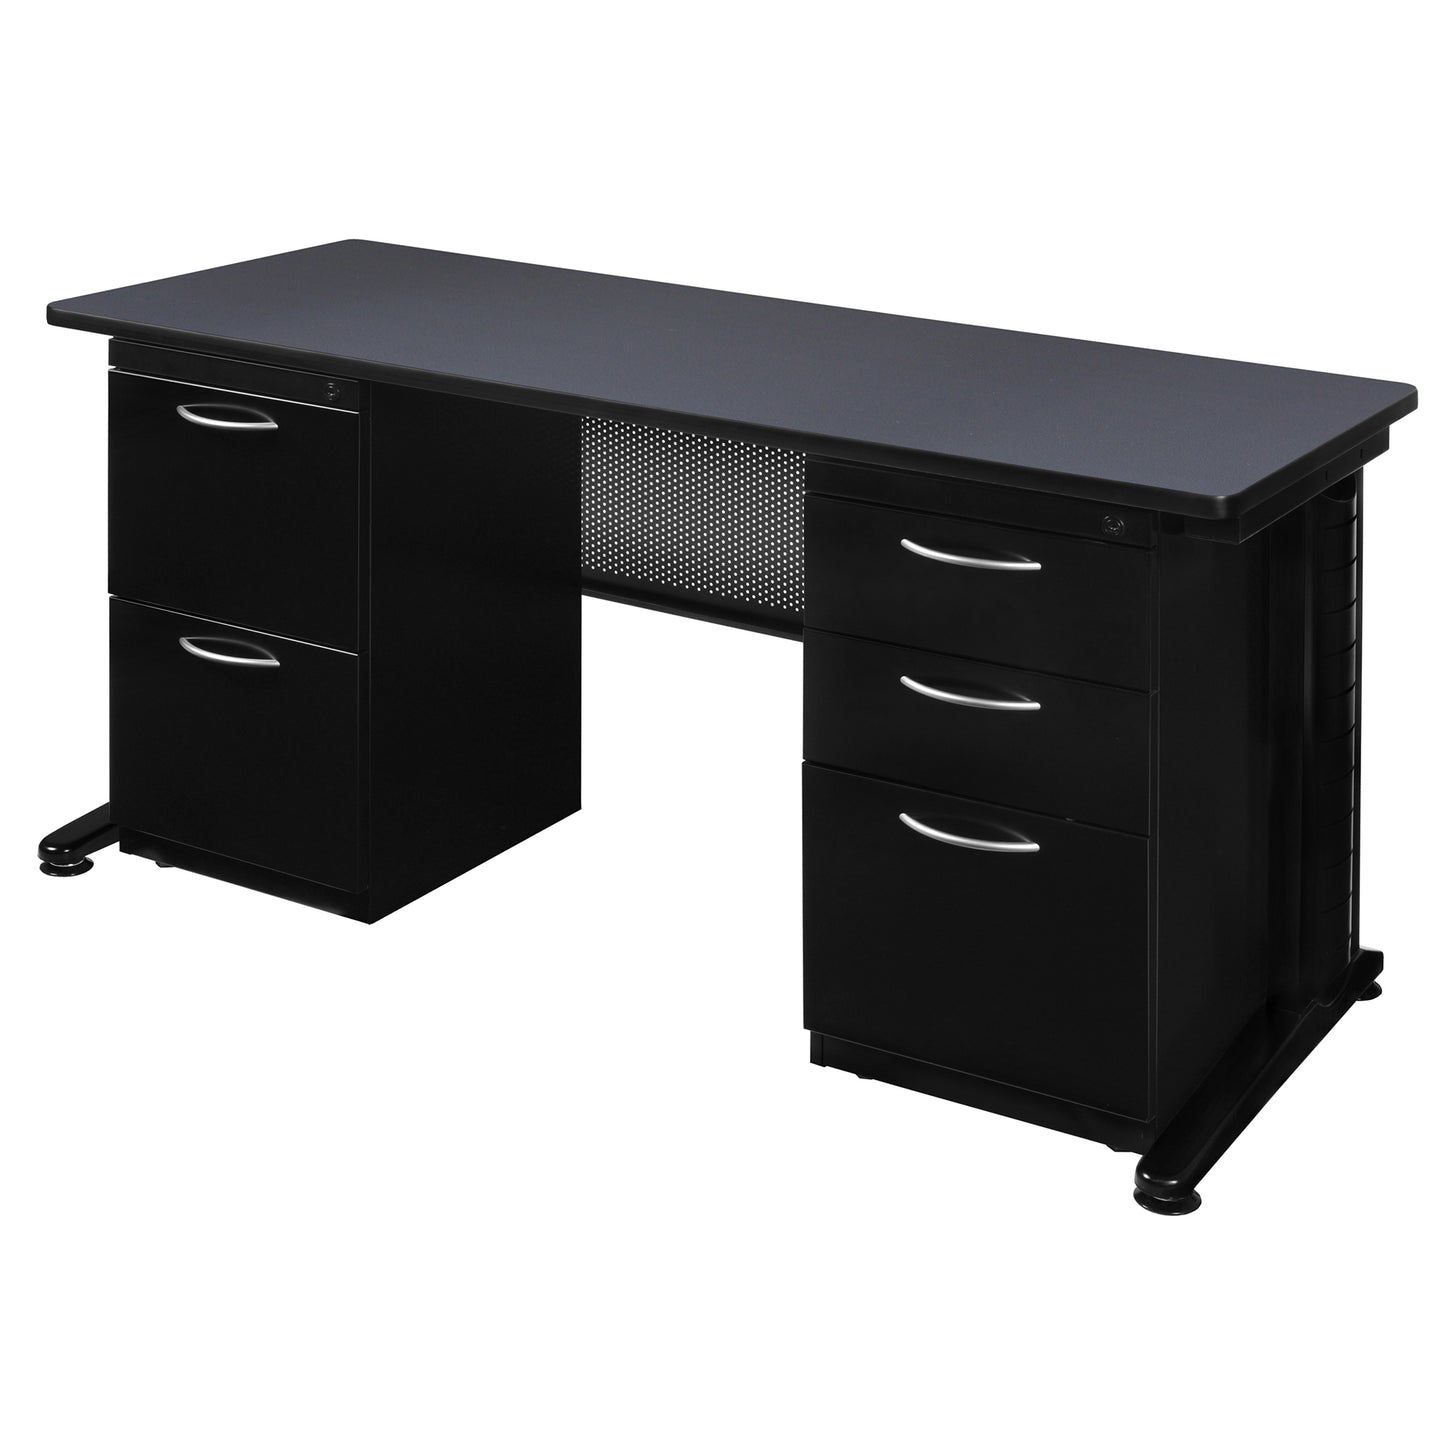 Regency Fusion 66" x 30" Teachers Desk with Double Pedestal Drawer Unit